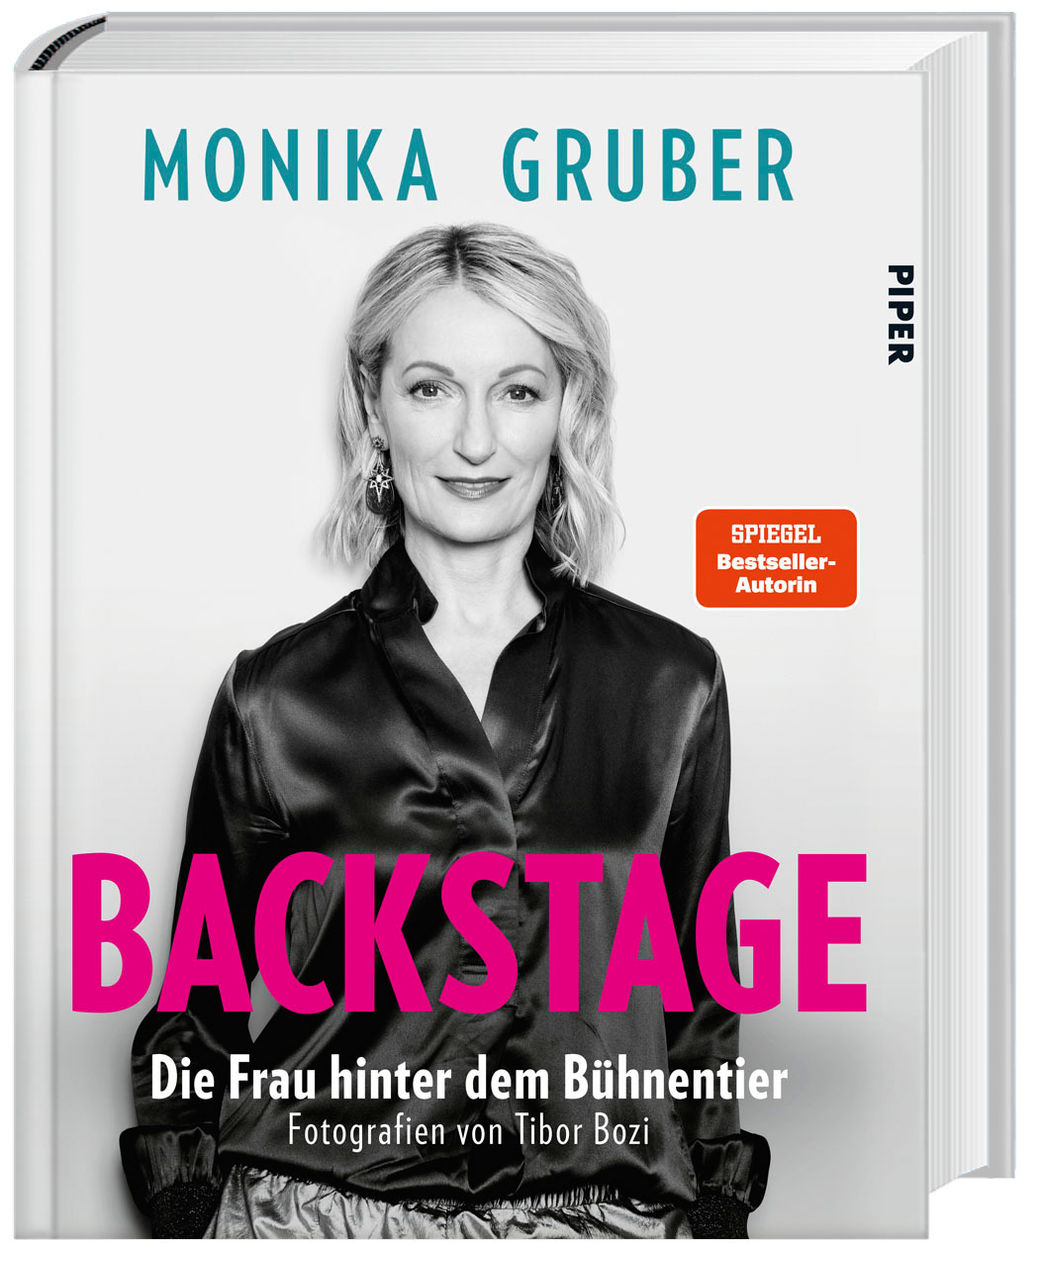 Backstage Buch von Monika Gruber versandkostenfrei bestellen - Weltbild.de